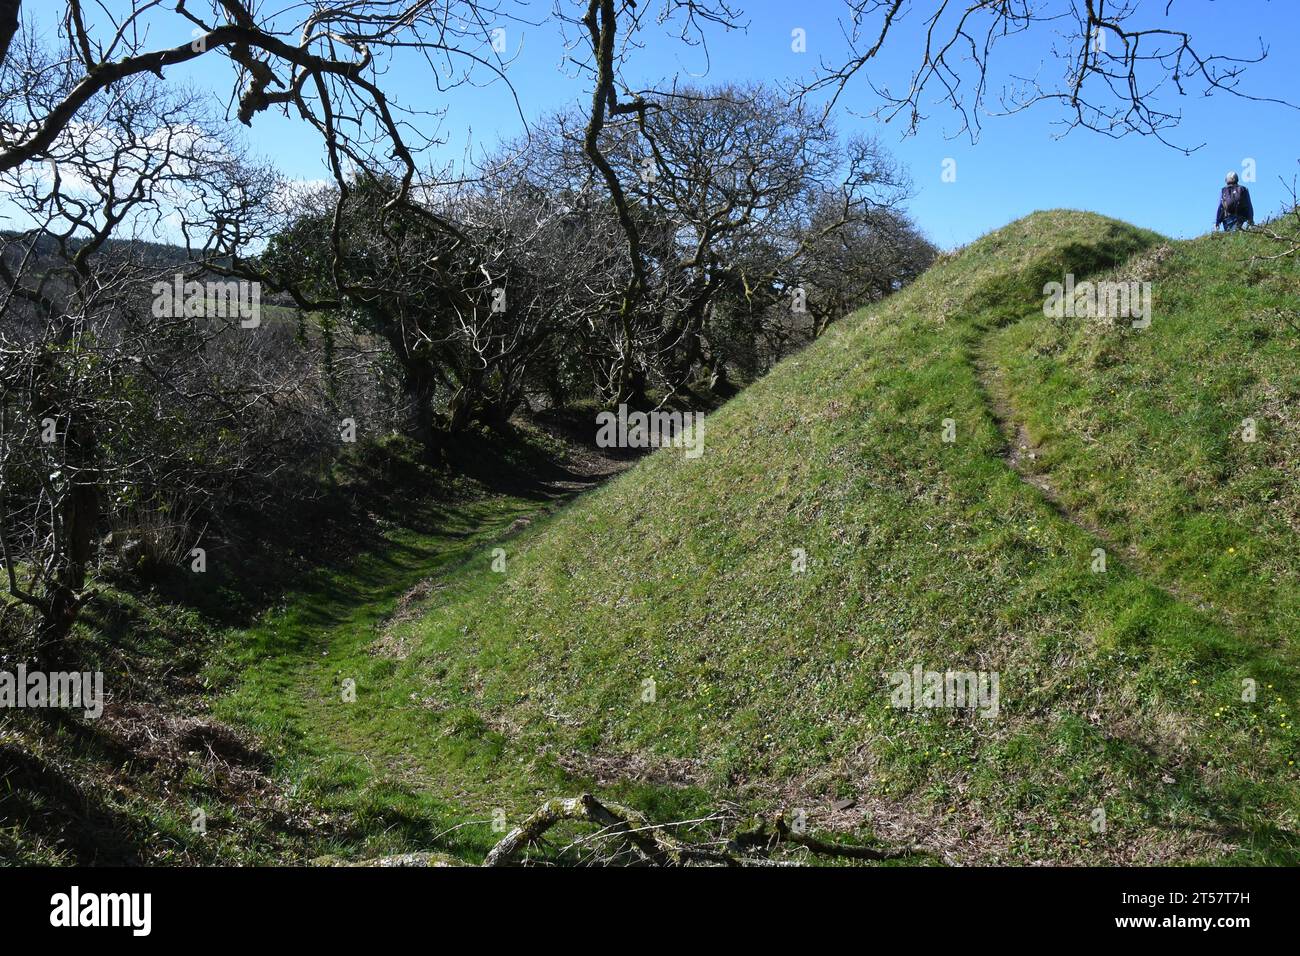 Steile Hänge der Burg Kilkhampton, auch bekannt als Penstowe Castle, mittelalterliche Festung von Motte und Bailey Bau gebaut auf einem Hügel, der von steilen s geschützt ist Stockfoto